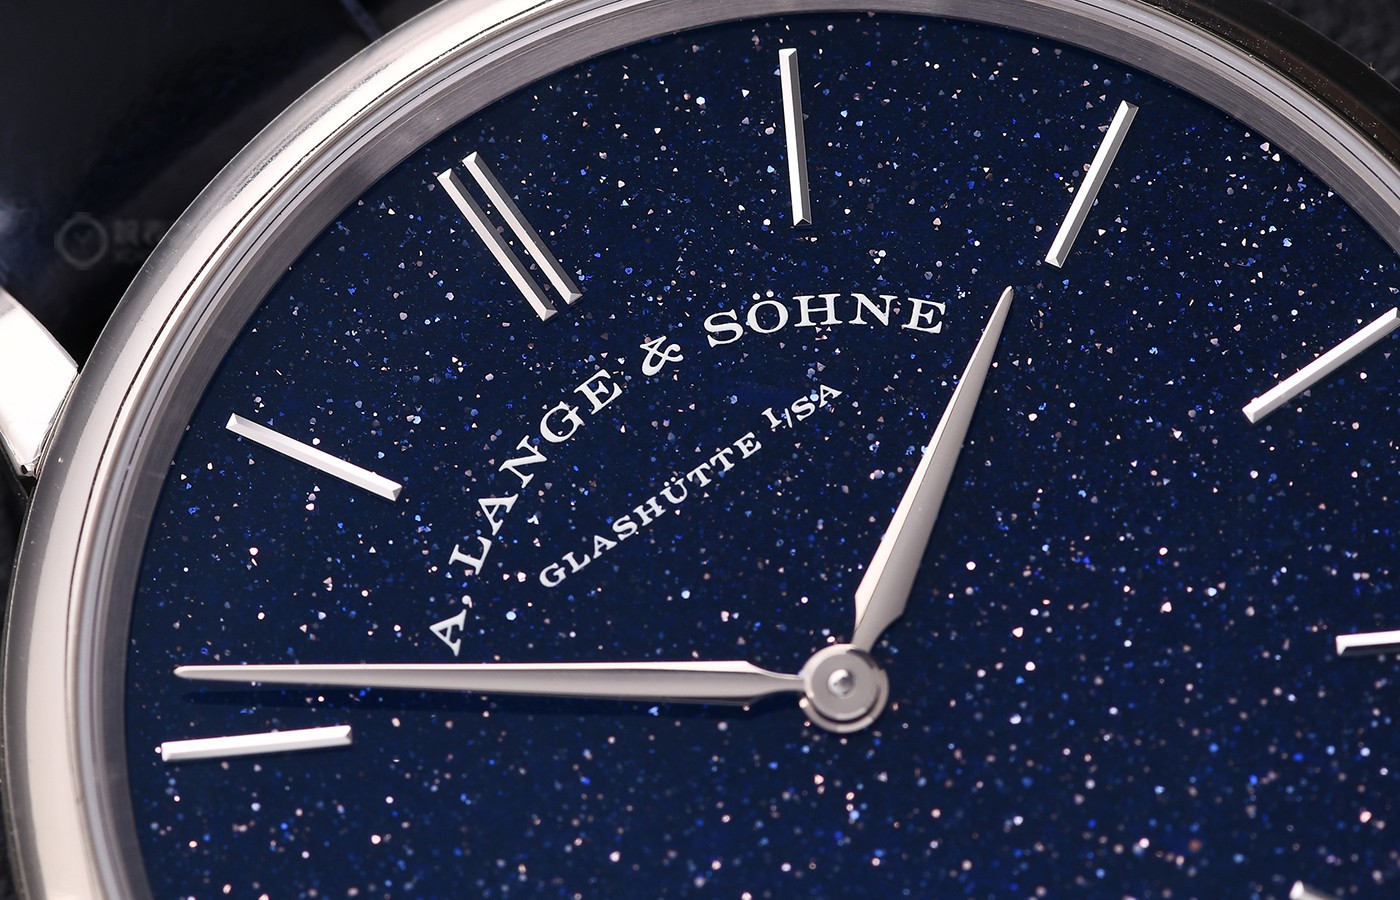 如果不能陪你领略到浩瀚无垠星空 那可以送你一枚朗格Saxonia Thin腕表吧